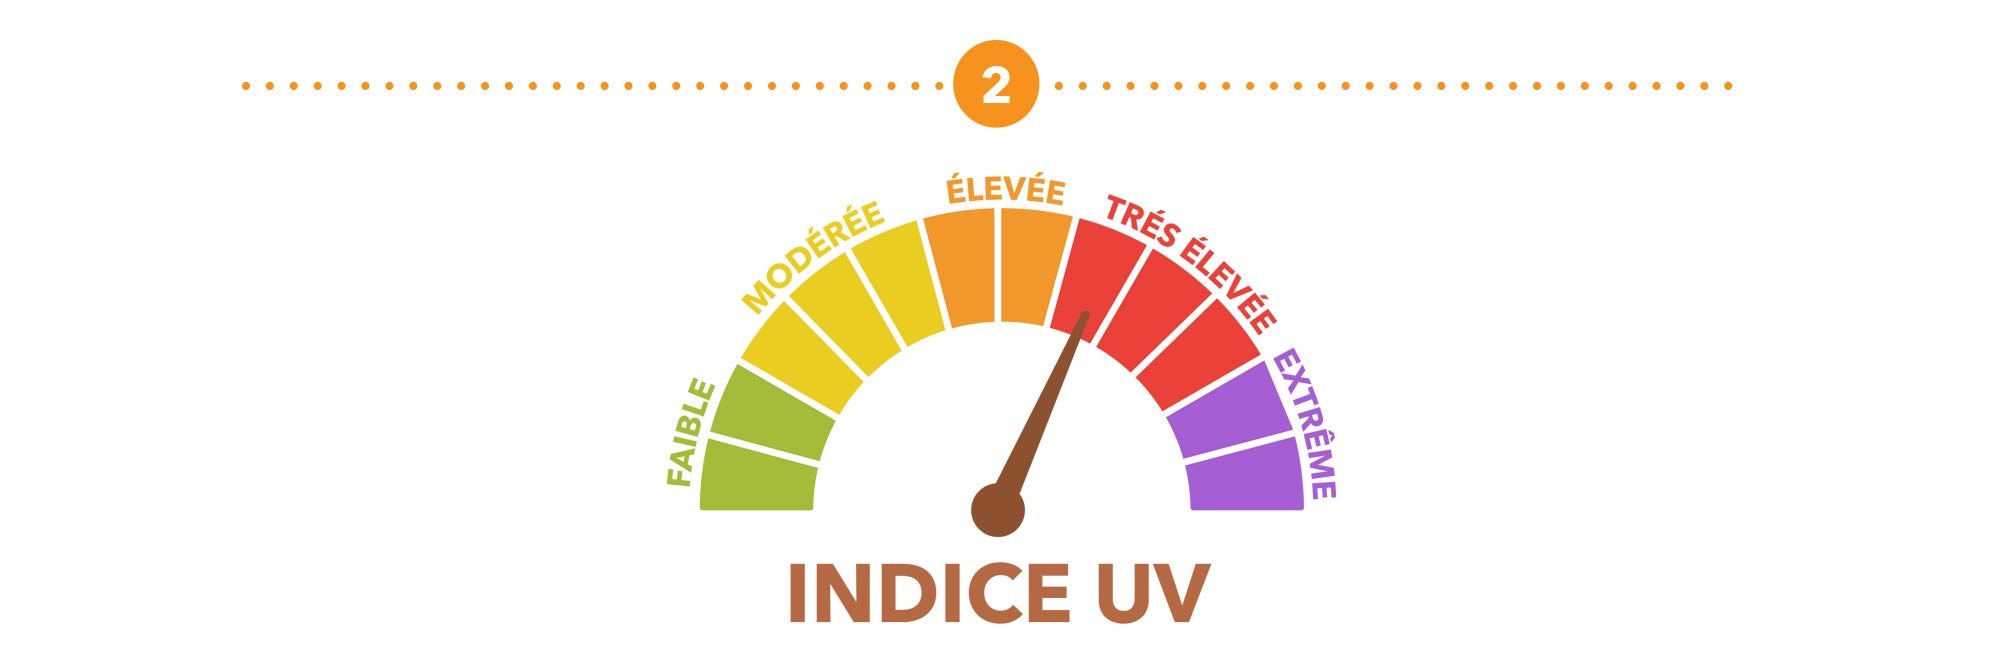 Illustration représentant une échelle d’indice UV en plusieurs couleurs.